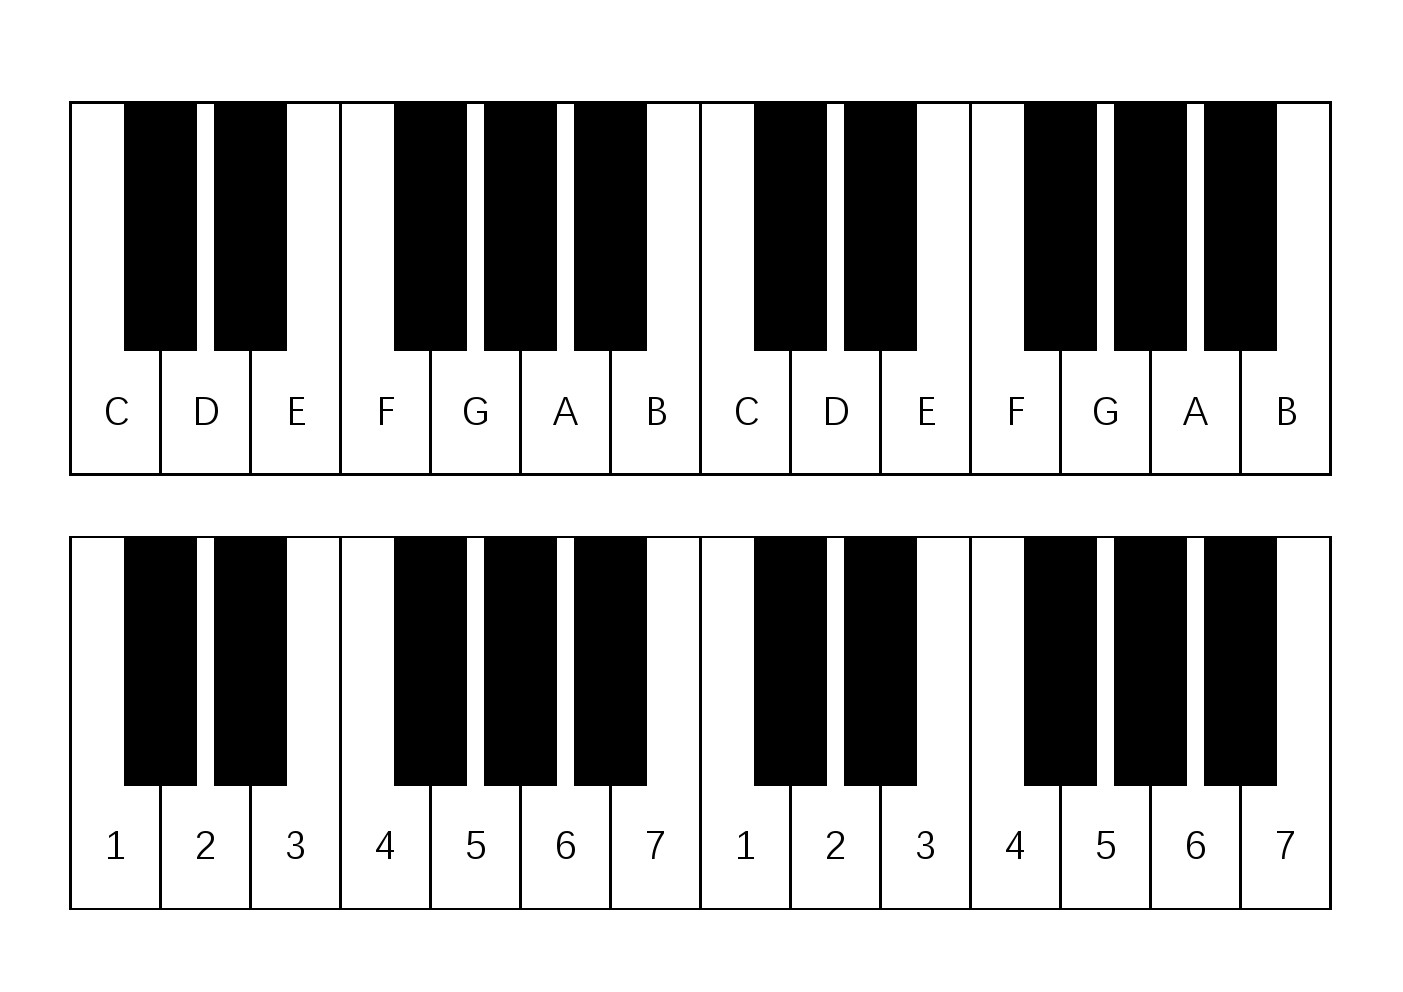 钢琴键平面图怎么画图片